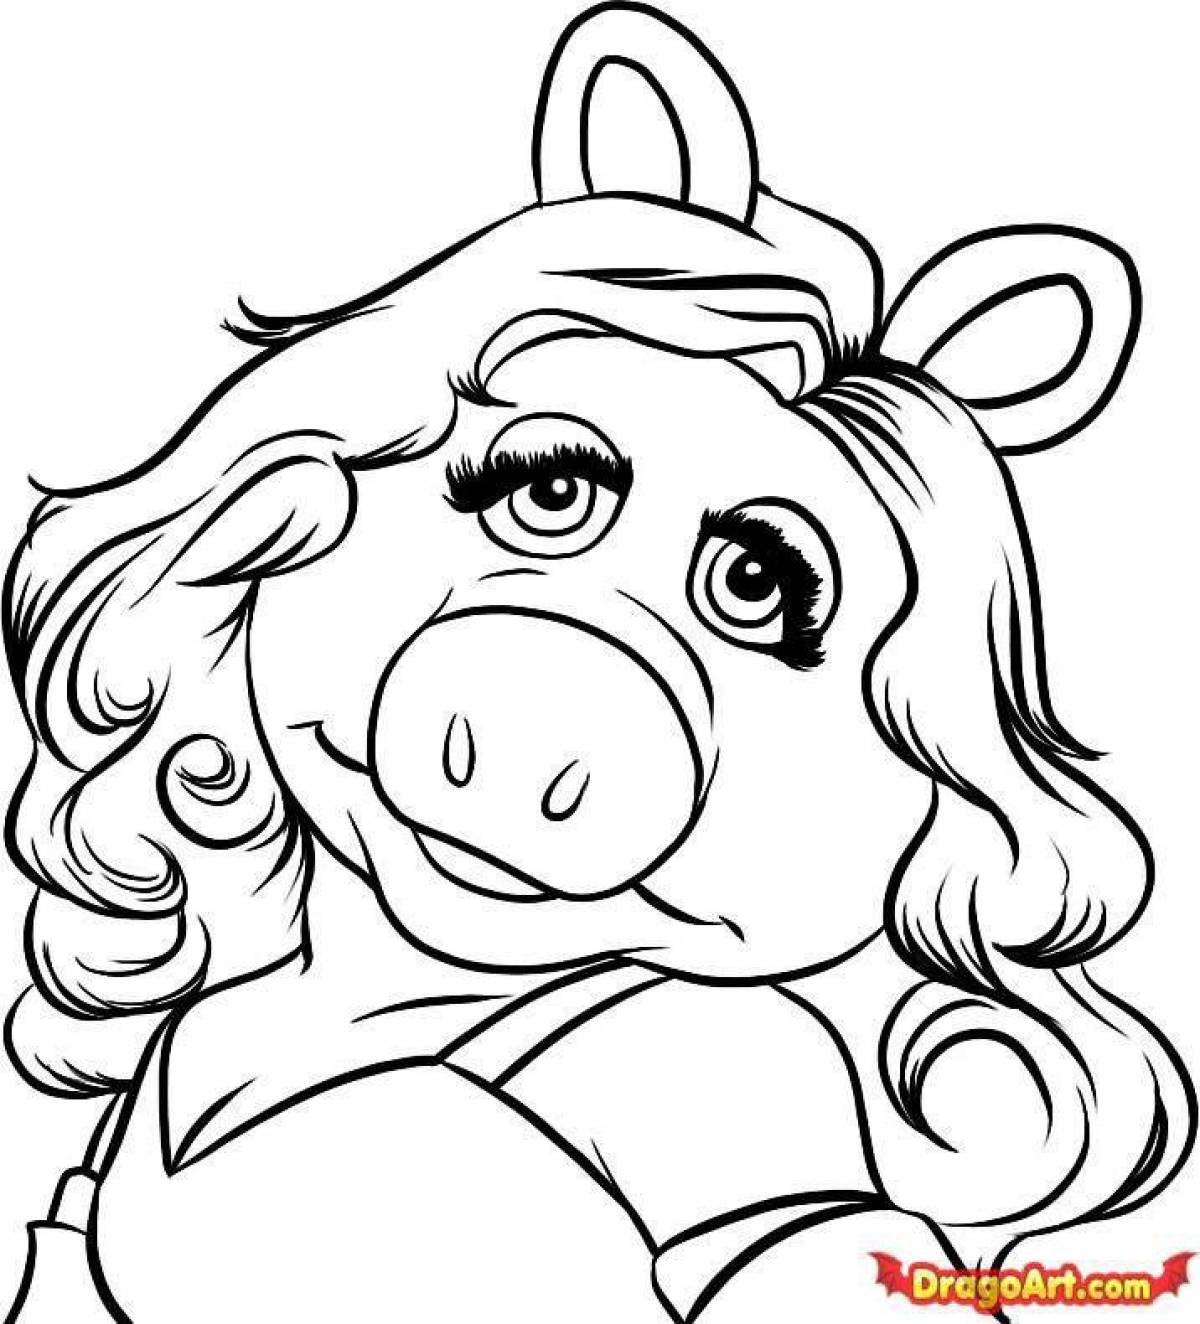 Fun coloring pig